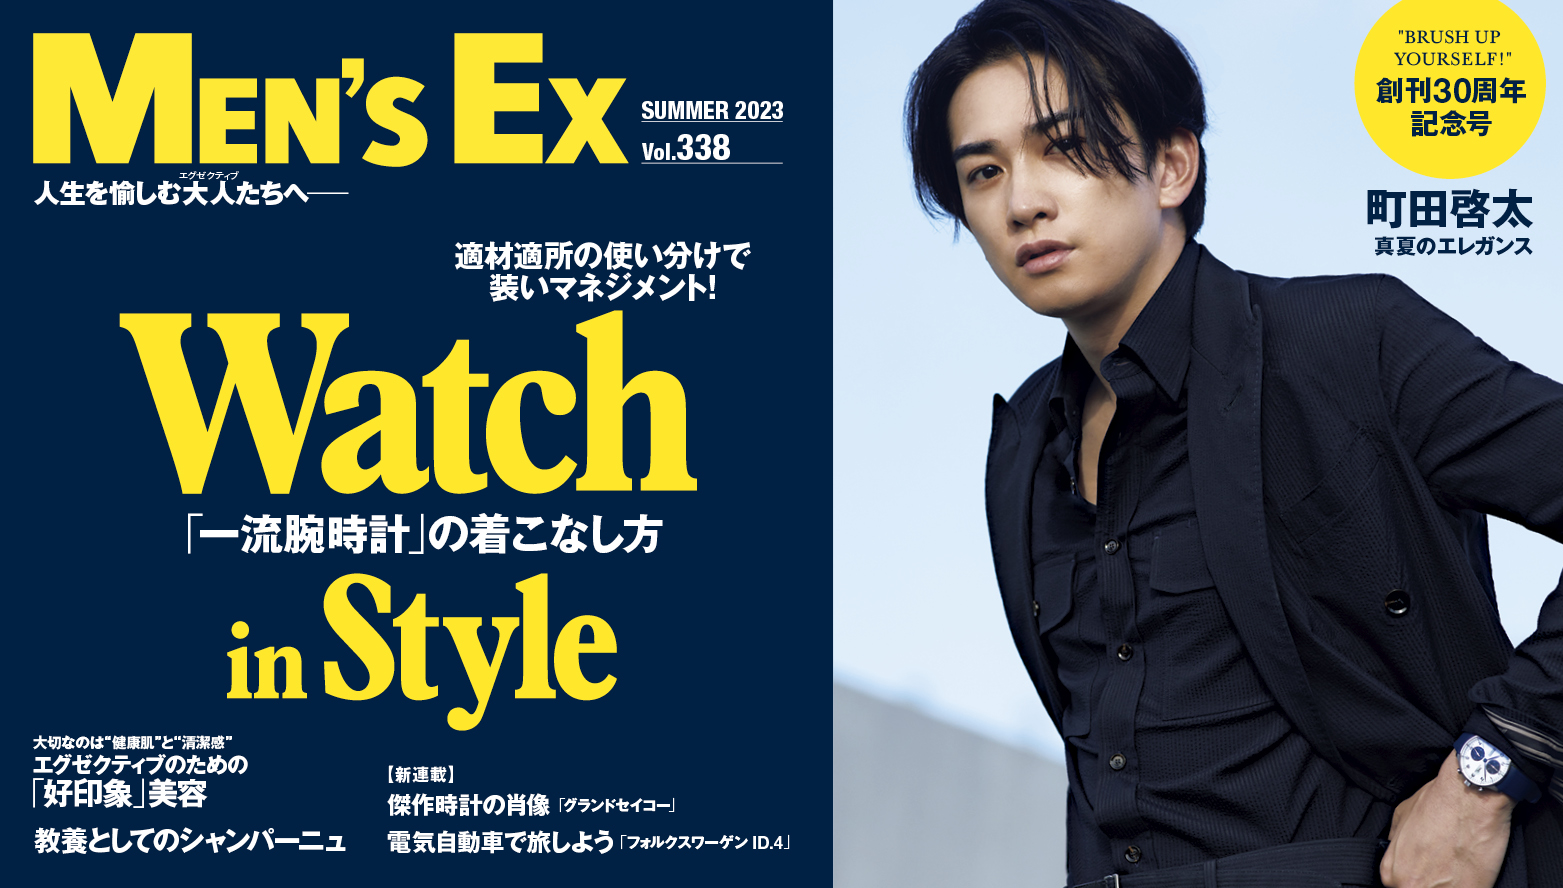 俳優・町田啓太が表紙を飾る『MEN'S EX』